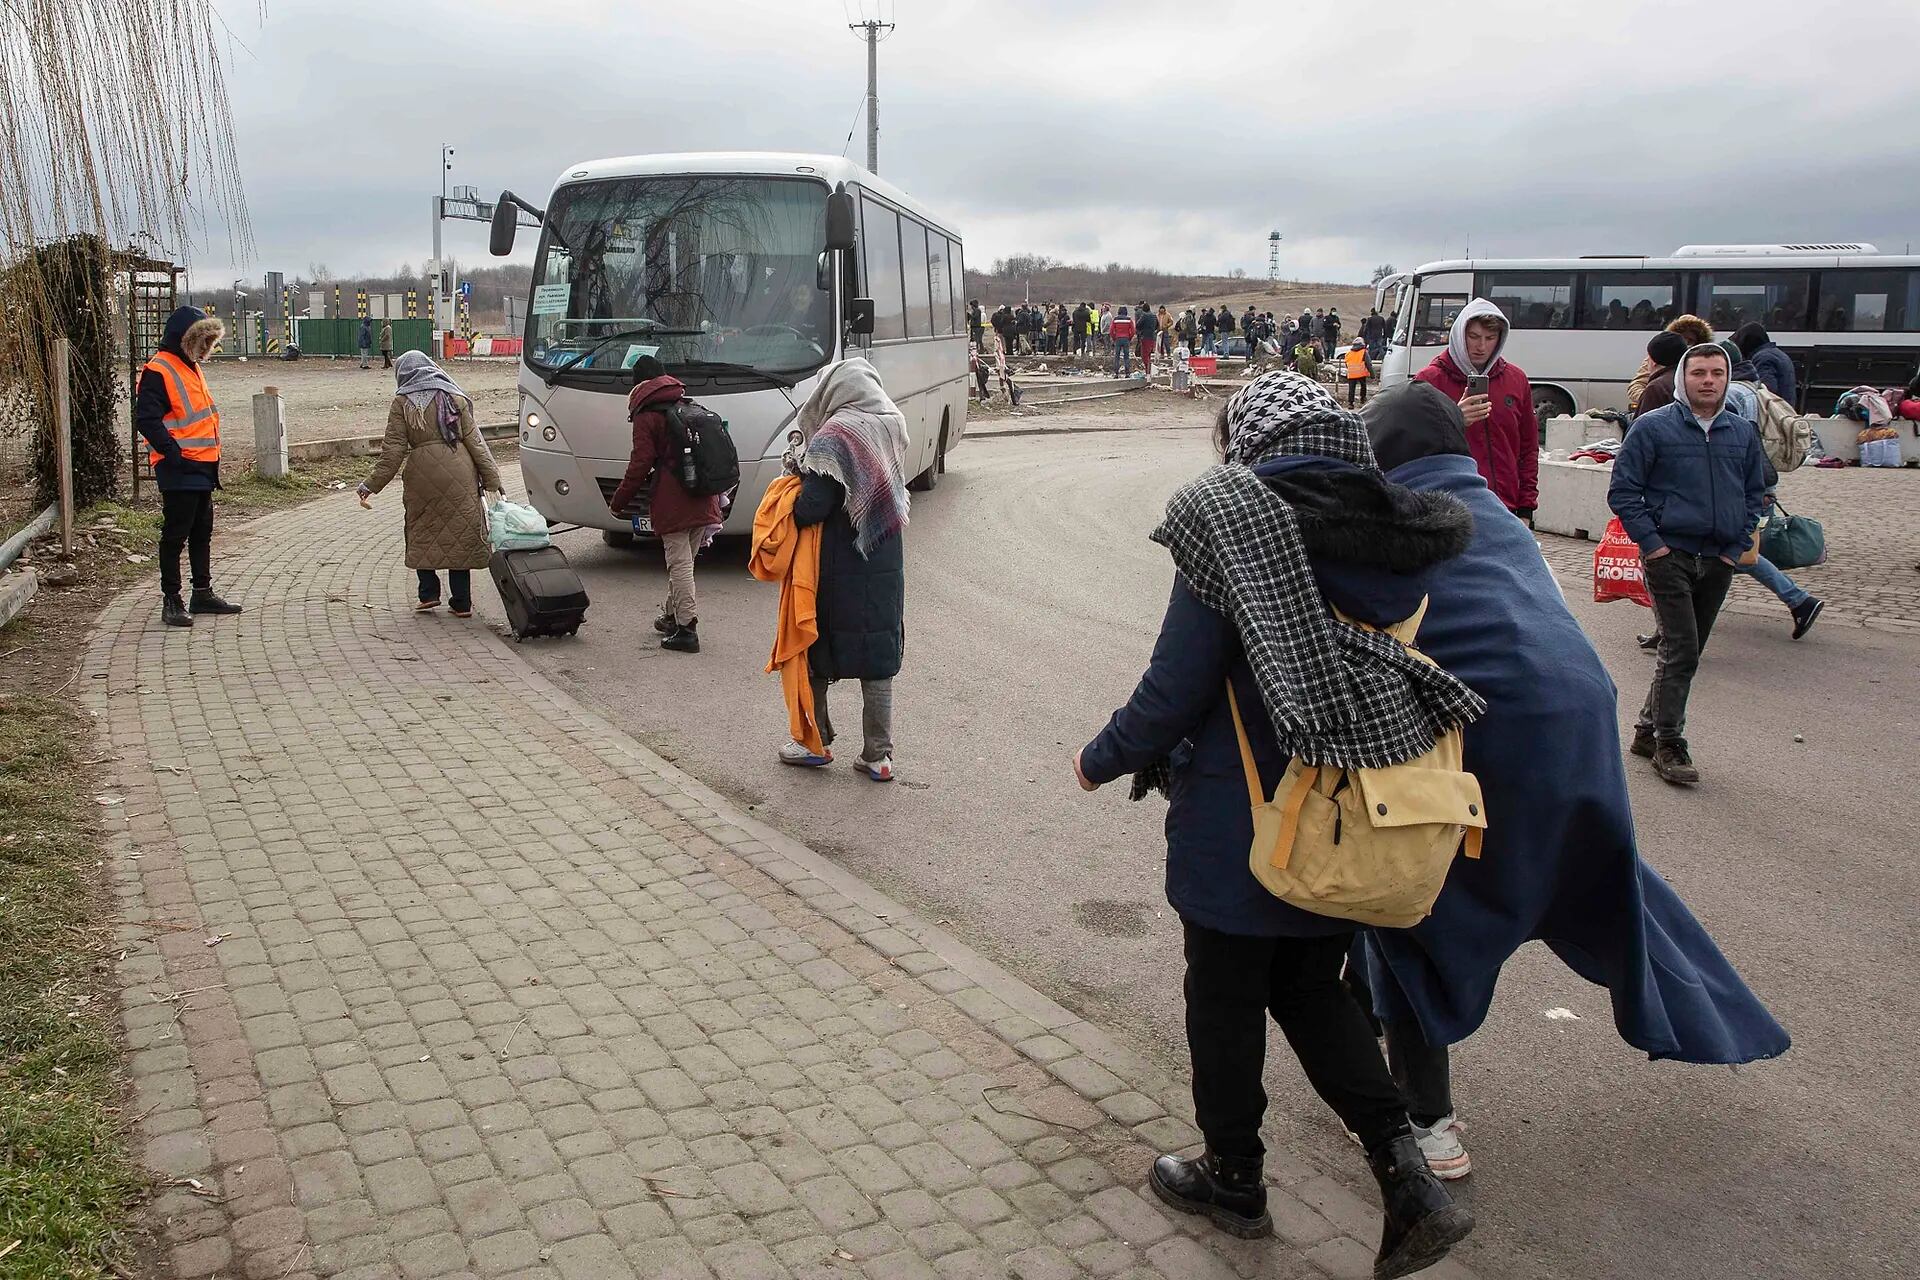 Refugiados cruzan la frontera en autobús